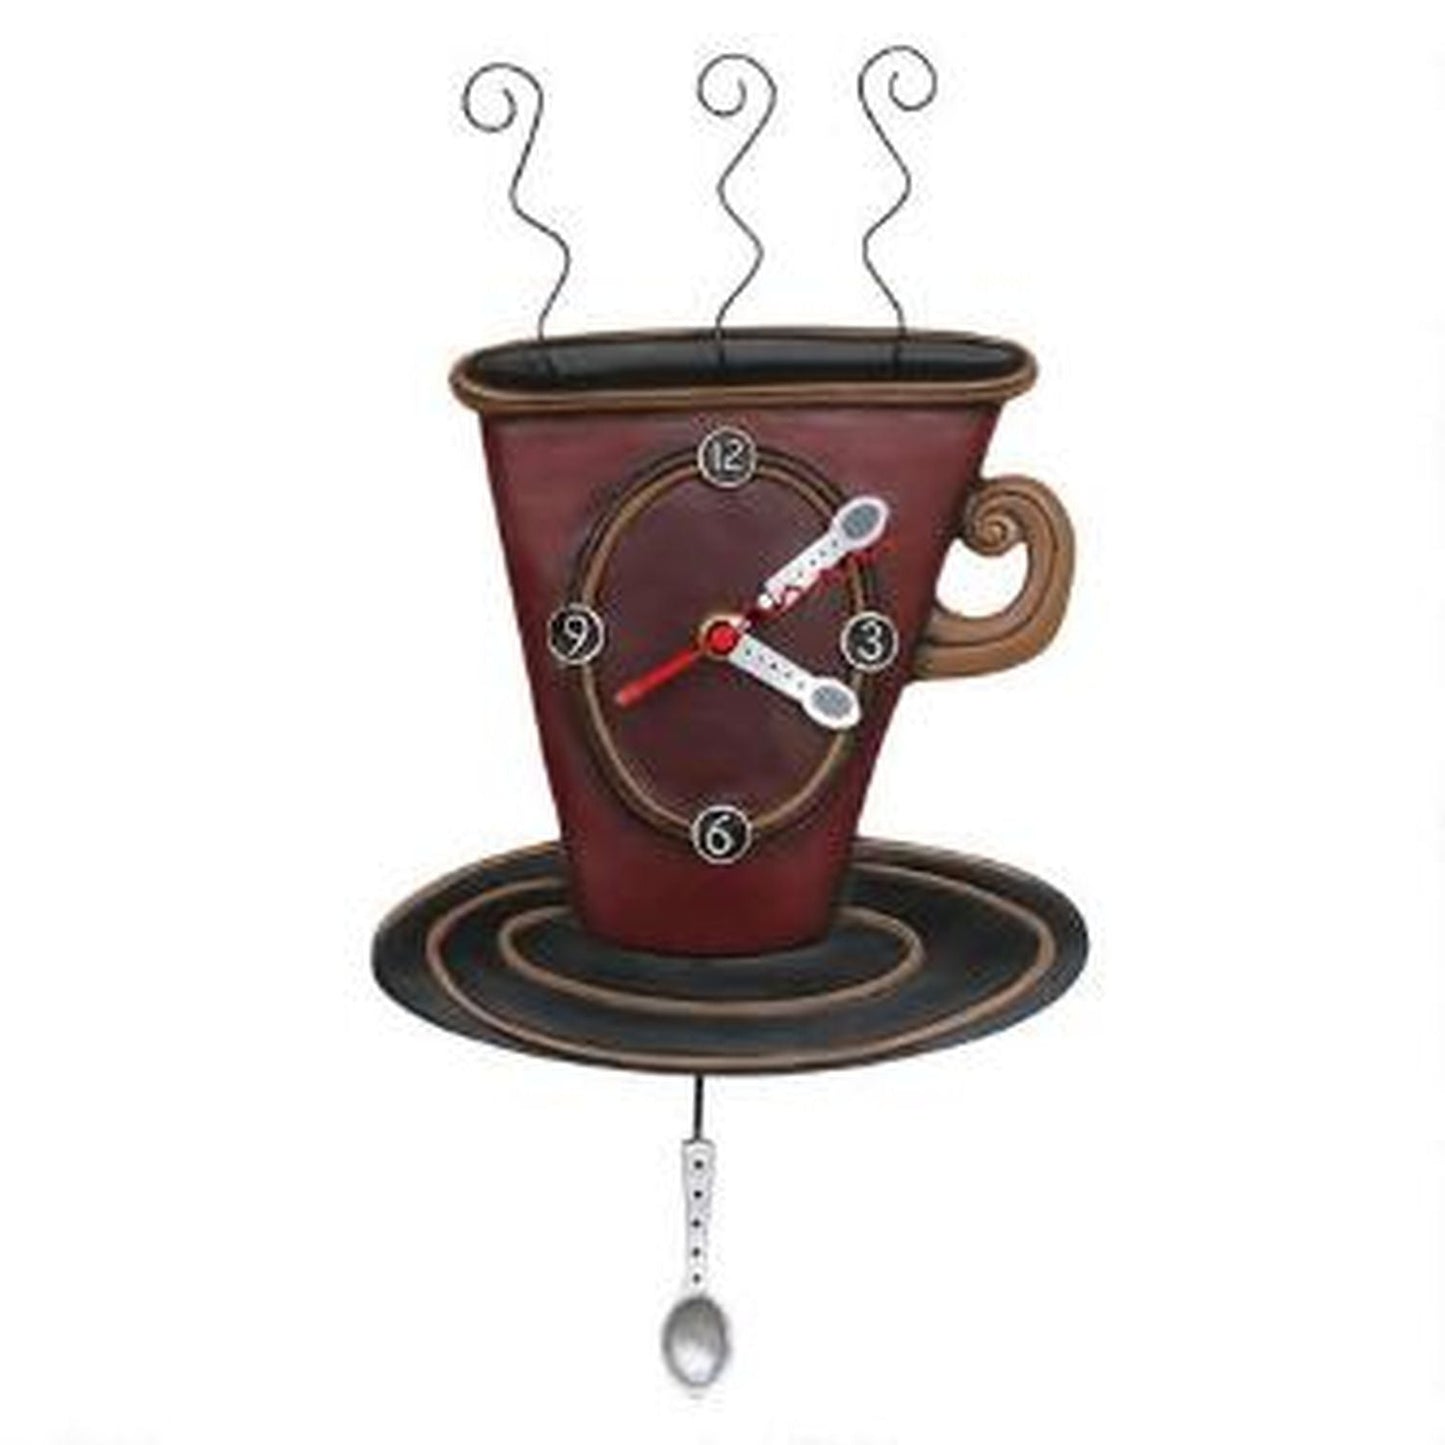 Enesco Allen Designs Cozy Cafe Clock